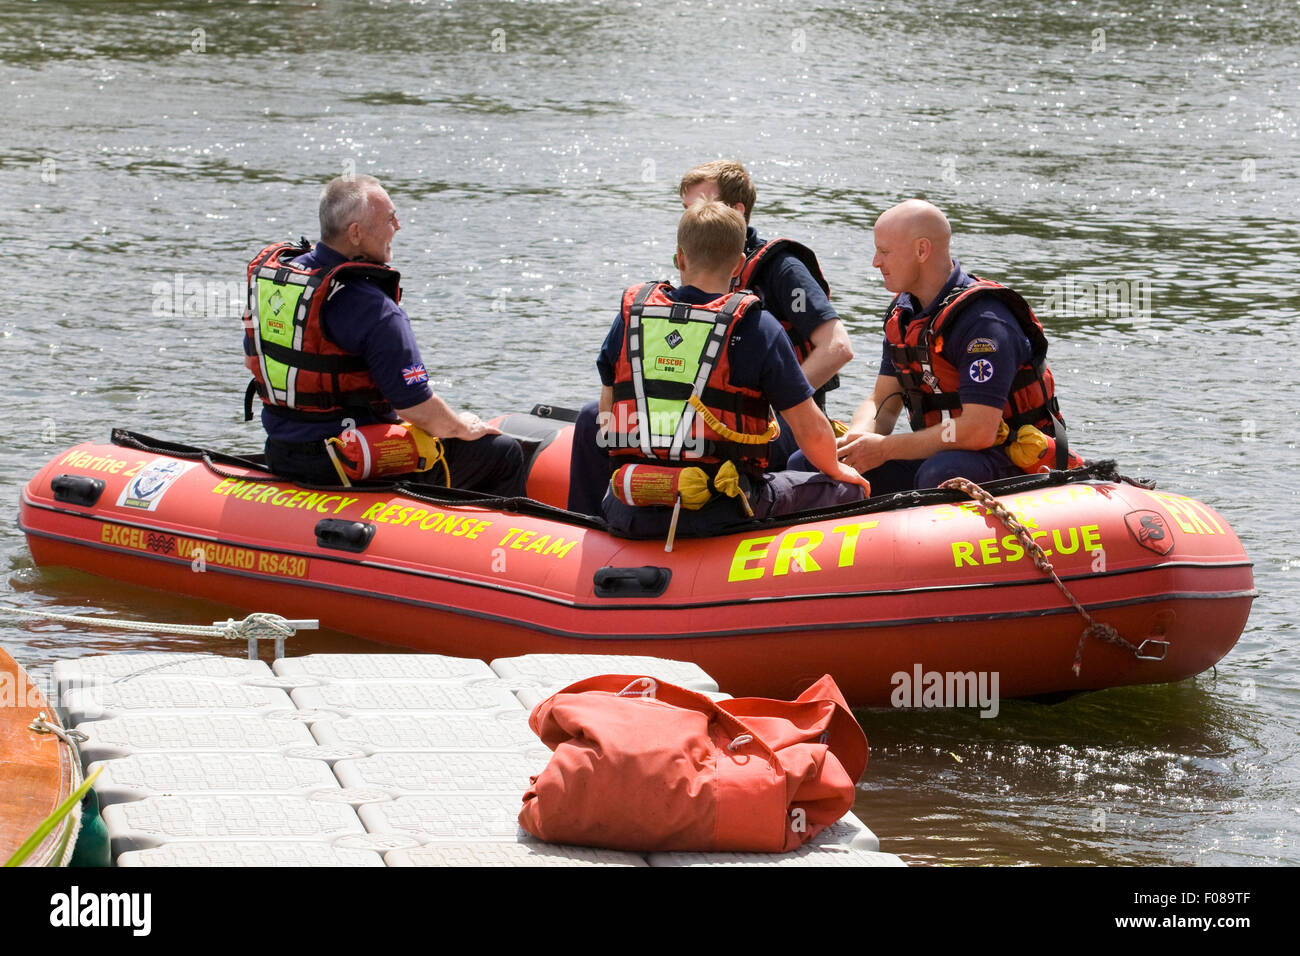 La risposta di emergenza unità in uno squallido motorizzato sull'acqua in barca tradizionale Festival' Henley on Thames Foto Stock